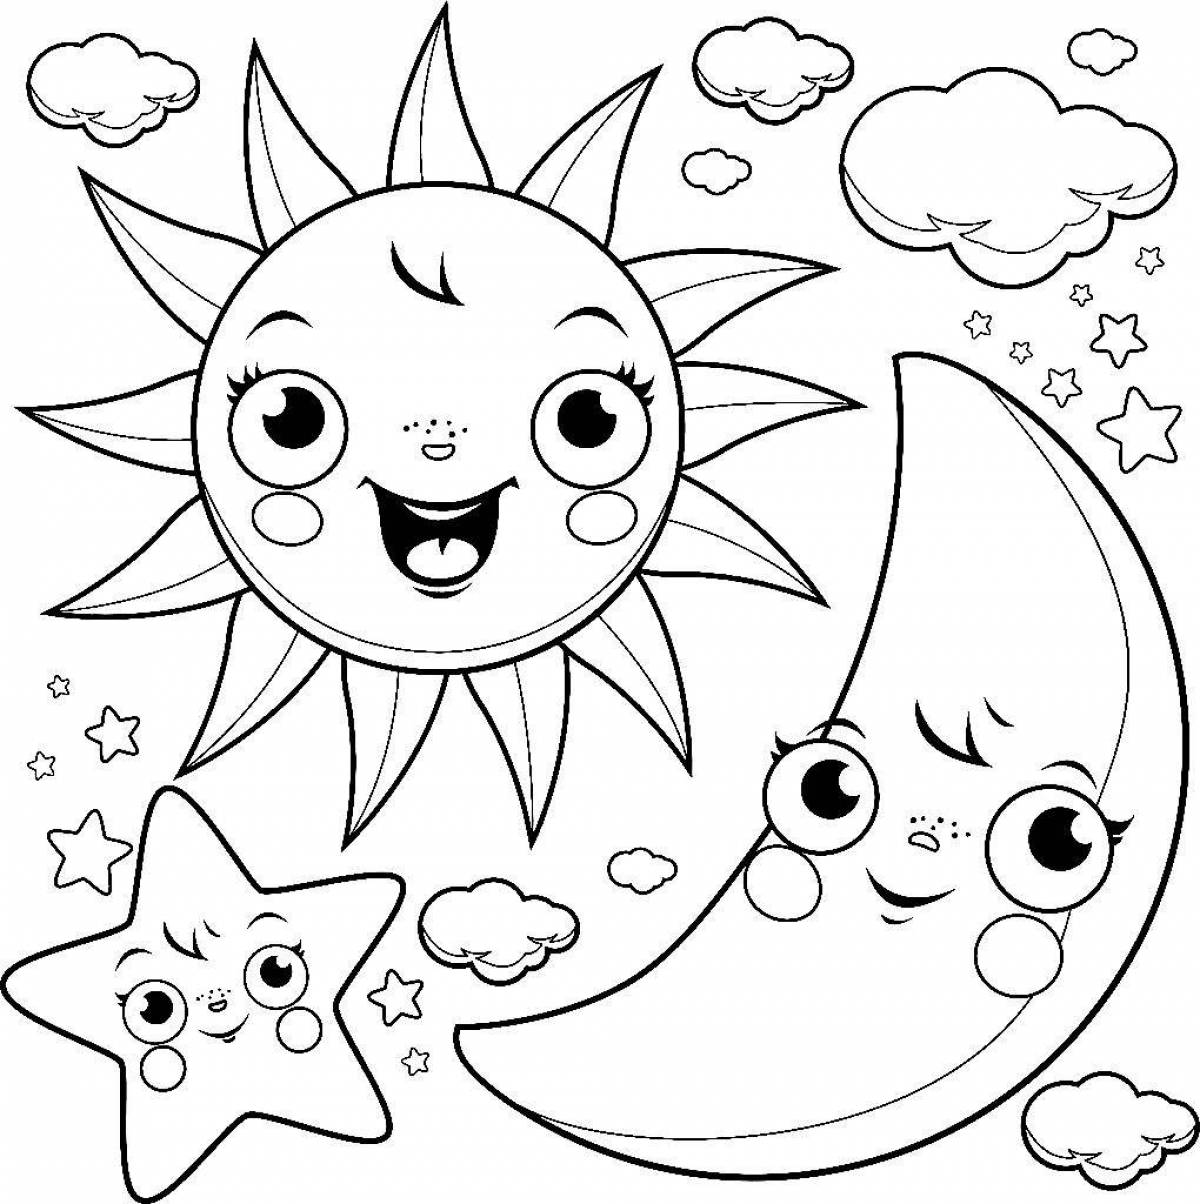 Великолепная раскраска солнце для детей 3-4 лет